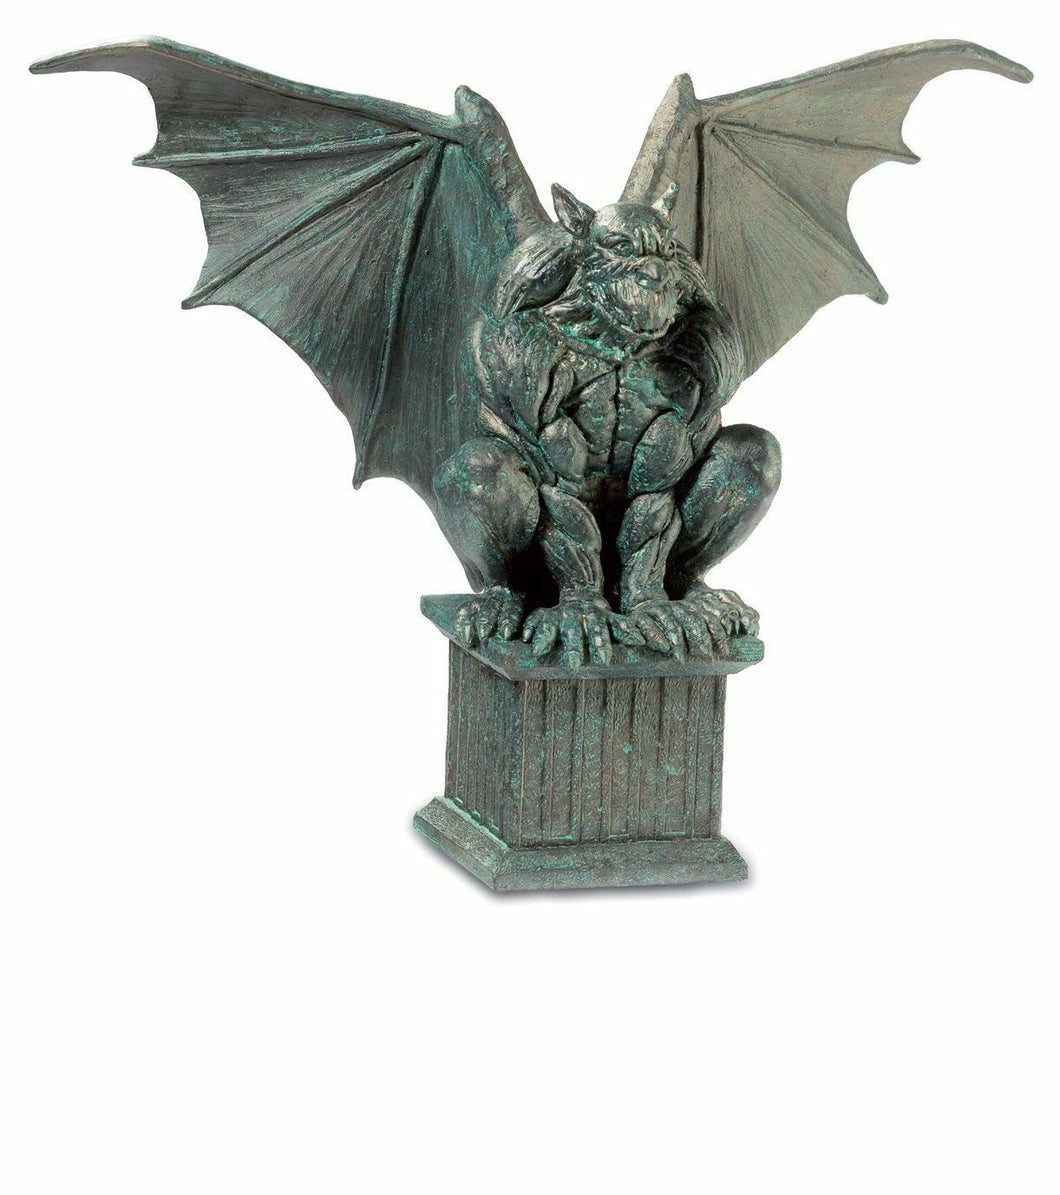 Antique Effect Gargoyle on Pedestal Figurine Statue Gothic Decor